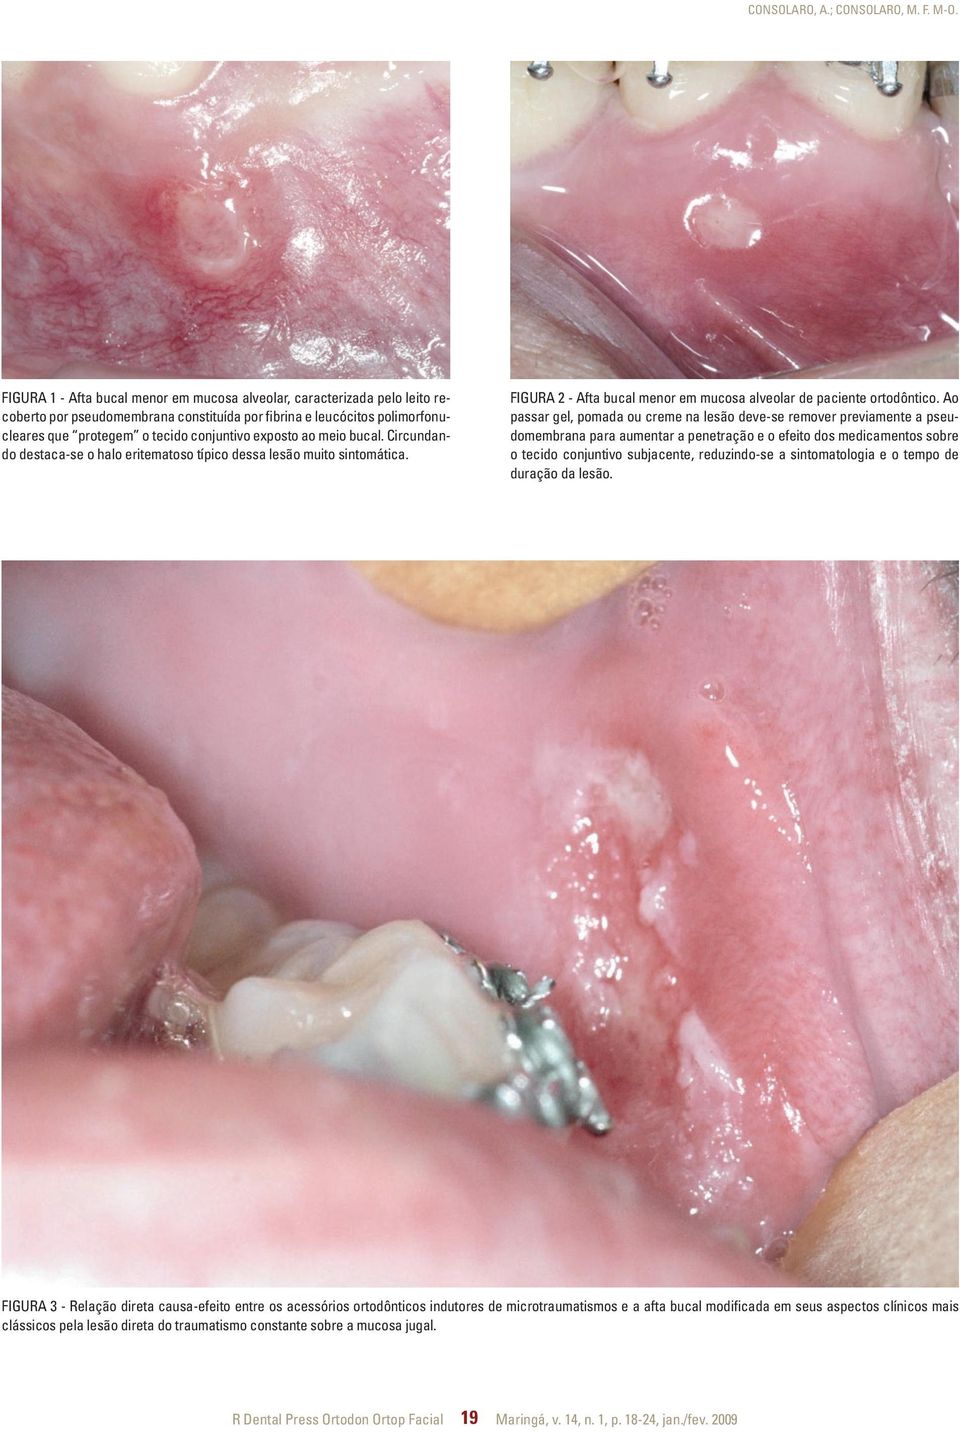 ao meio bucal. Circundando destaca-se o halo eritematoso típico dessa lesão muito sintomática. Figura 2 - Afta bucal menor em mucosa alveolar de paciente ortodôntico.